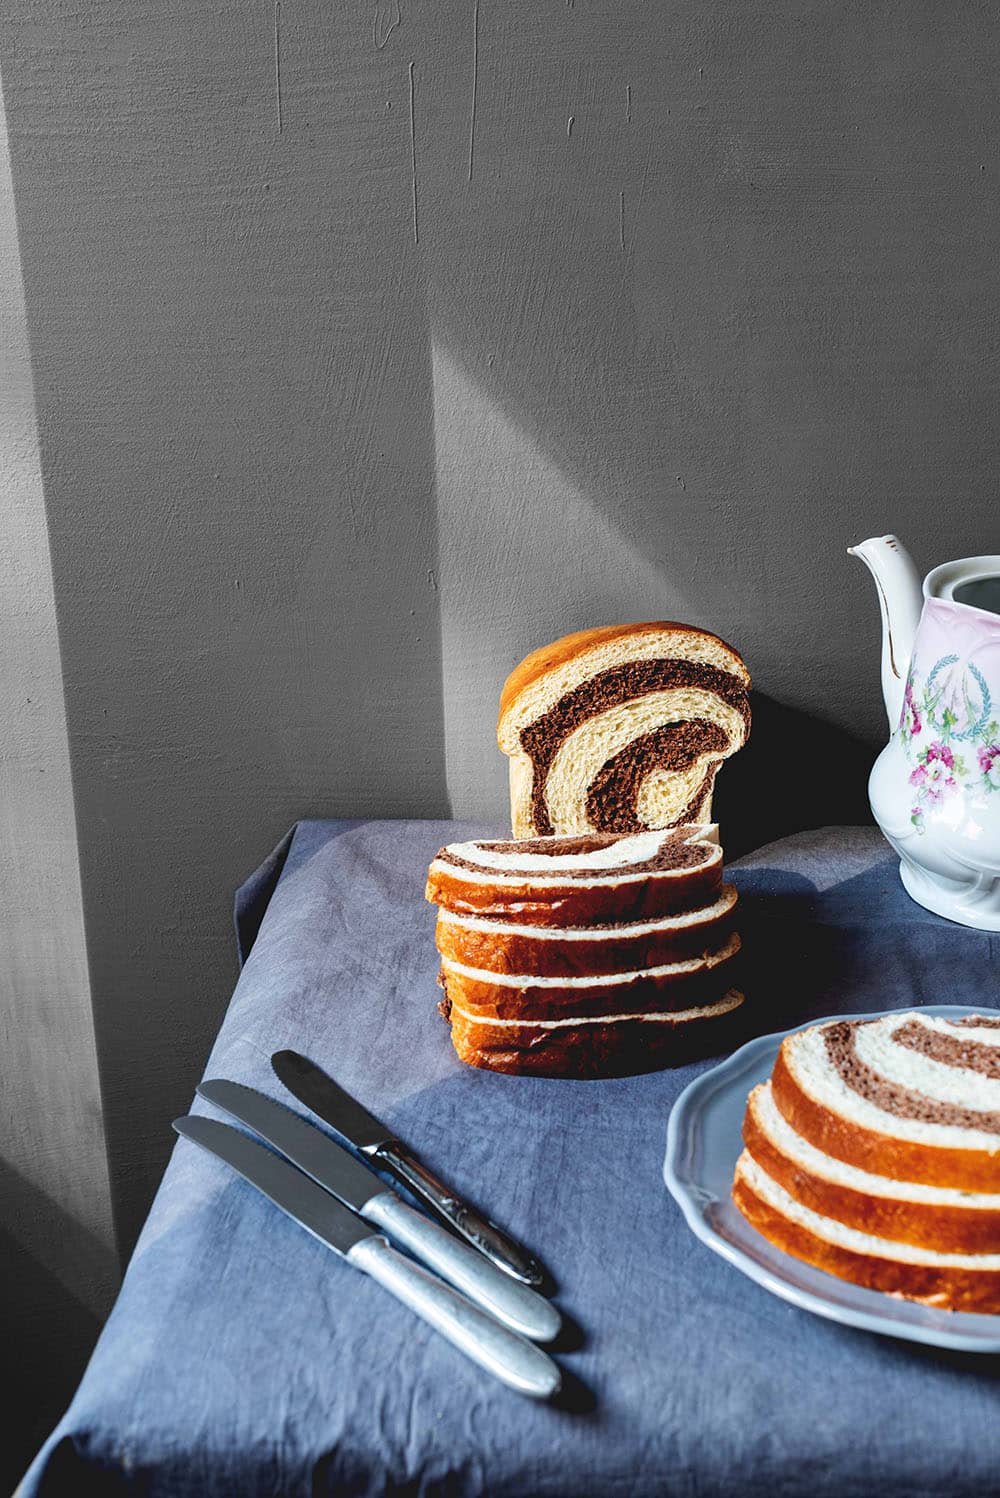 En una mesa cubierta con un mantel gris está el pan de brioche marmolado cortado. Alrededor hay una tetera vintage y en un plato hay más pan dulce marmolado cortado.